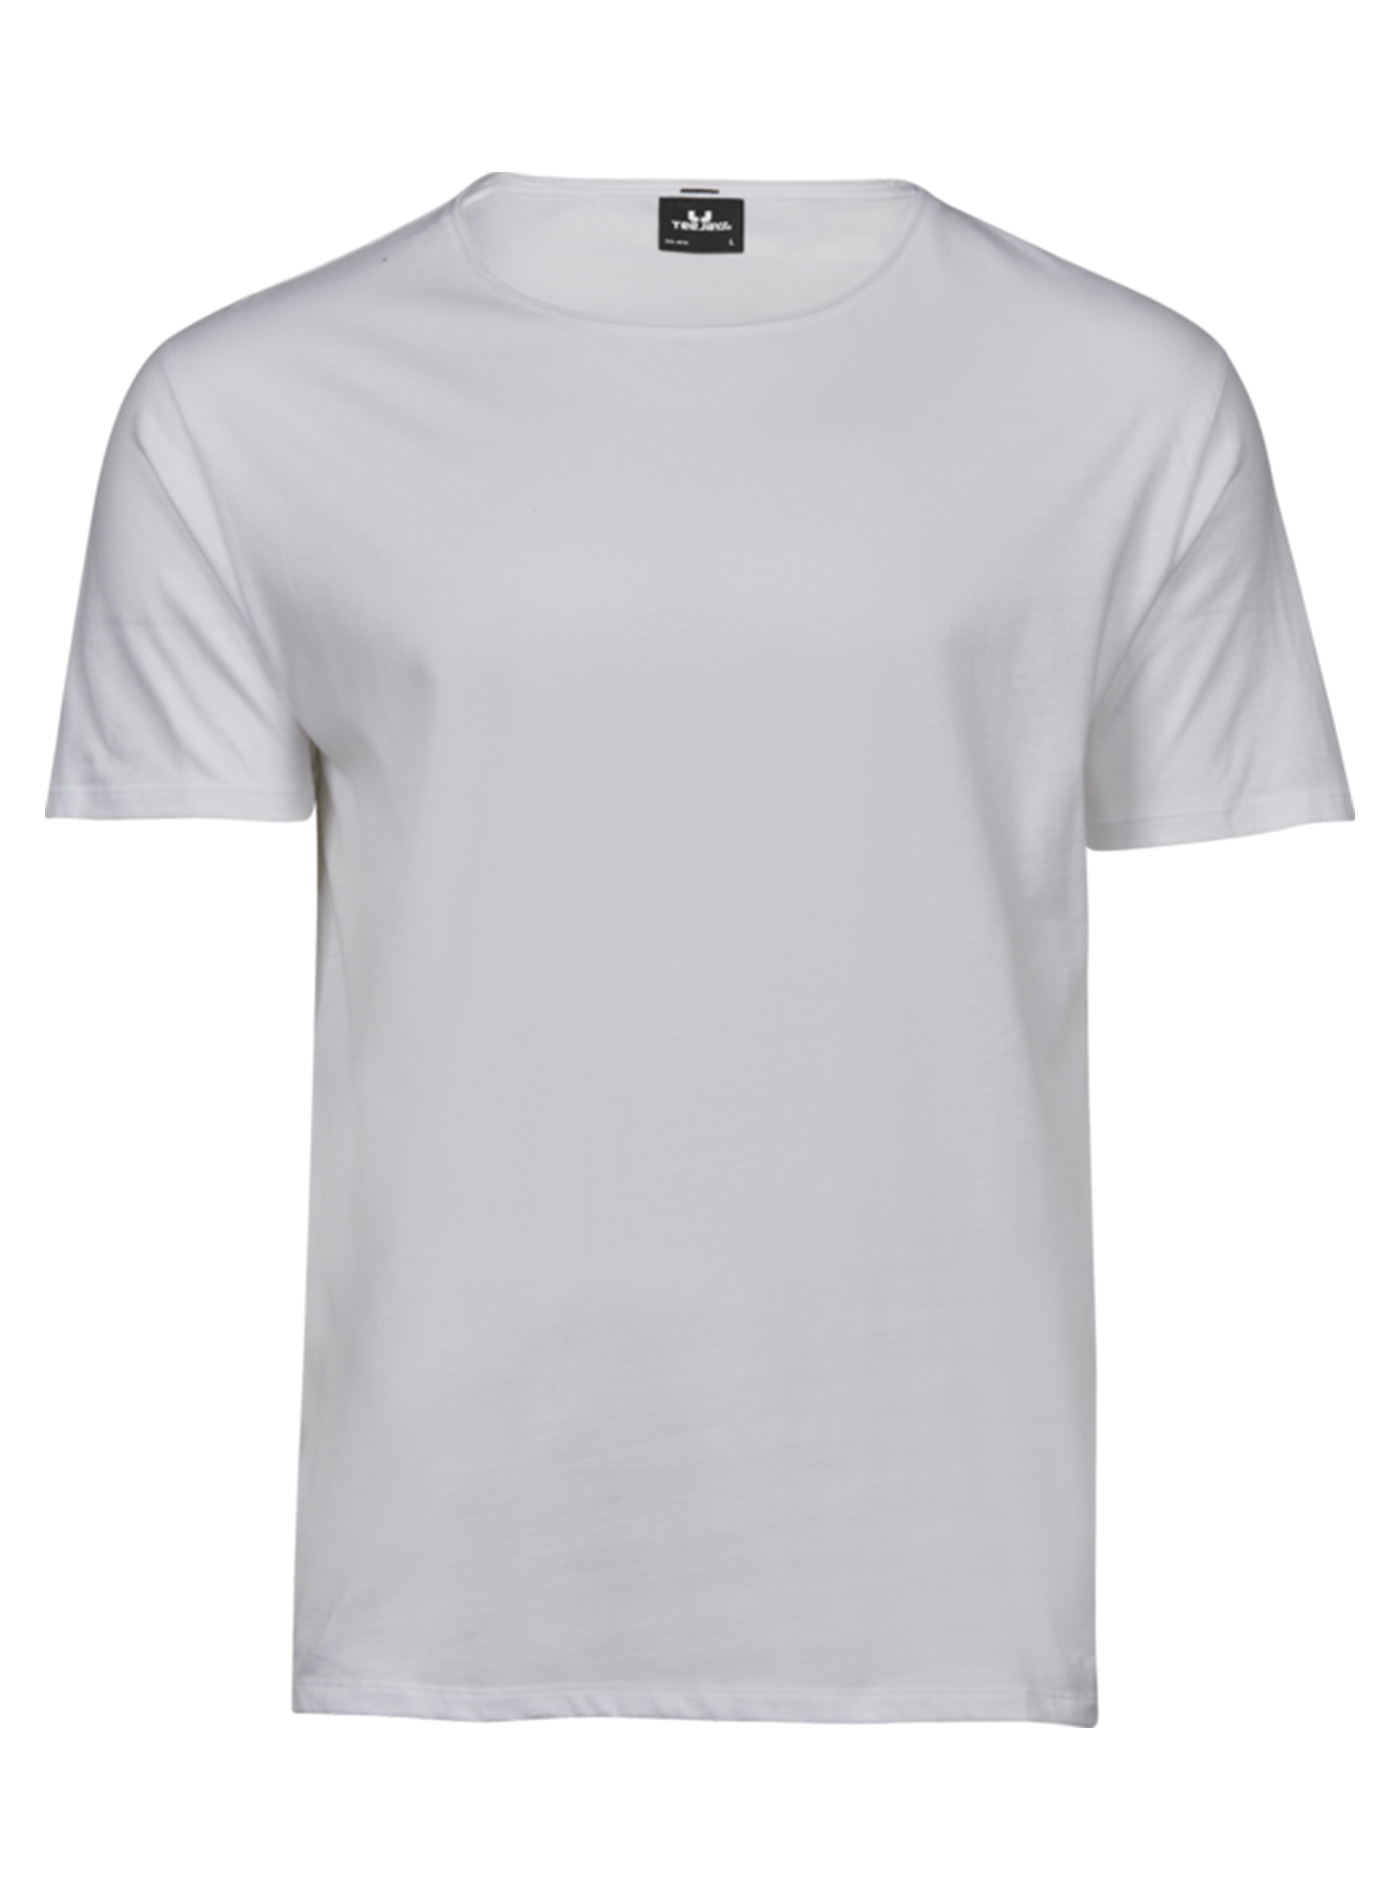 Pánské tričko Raw Tee Jays - Bílá XL